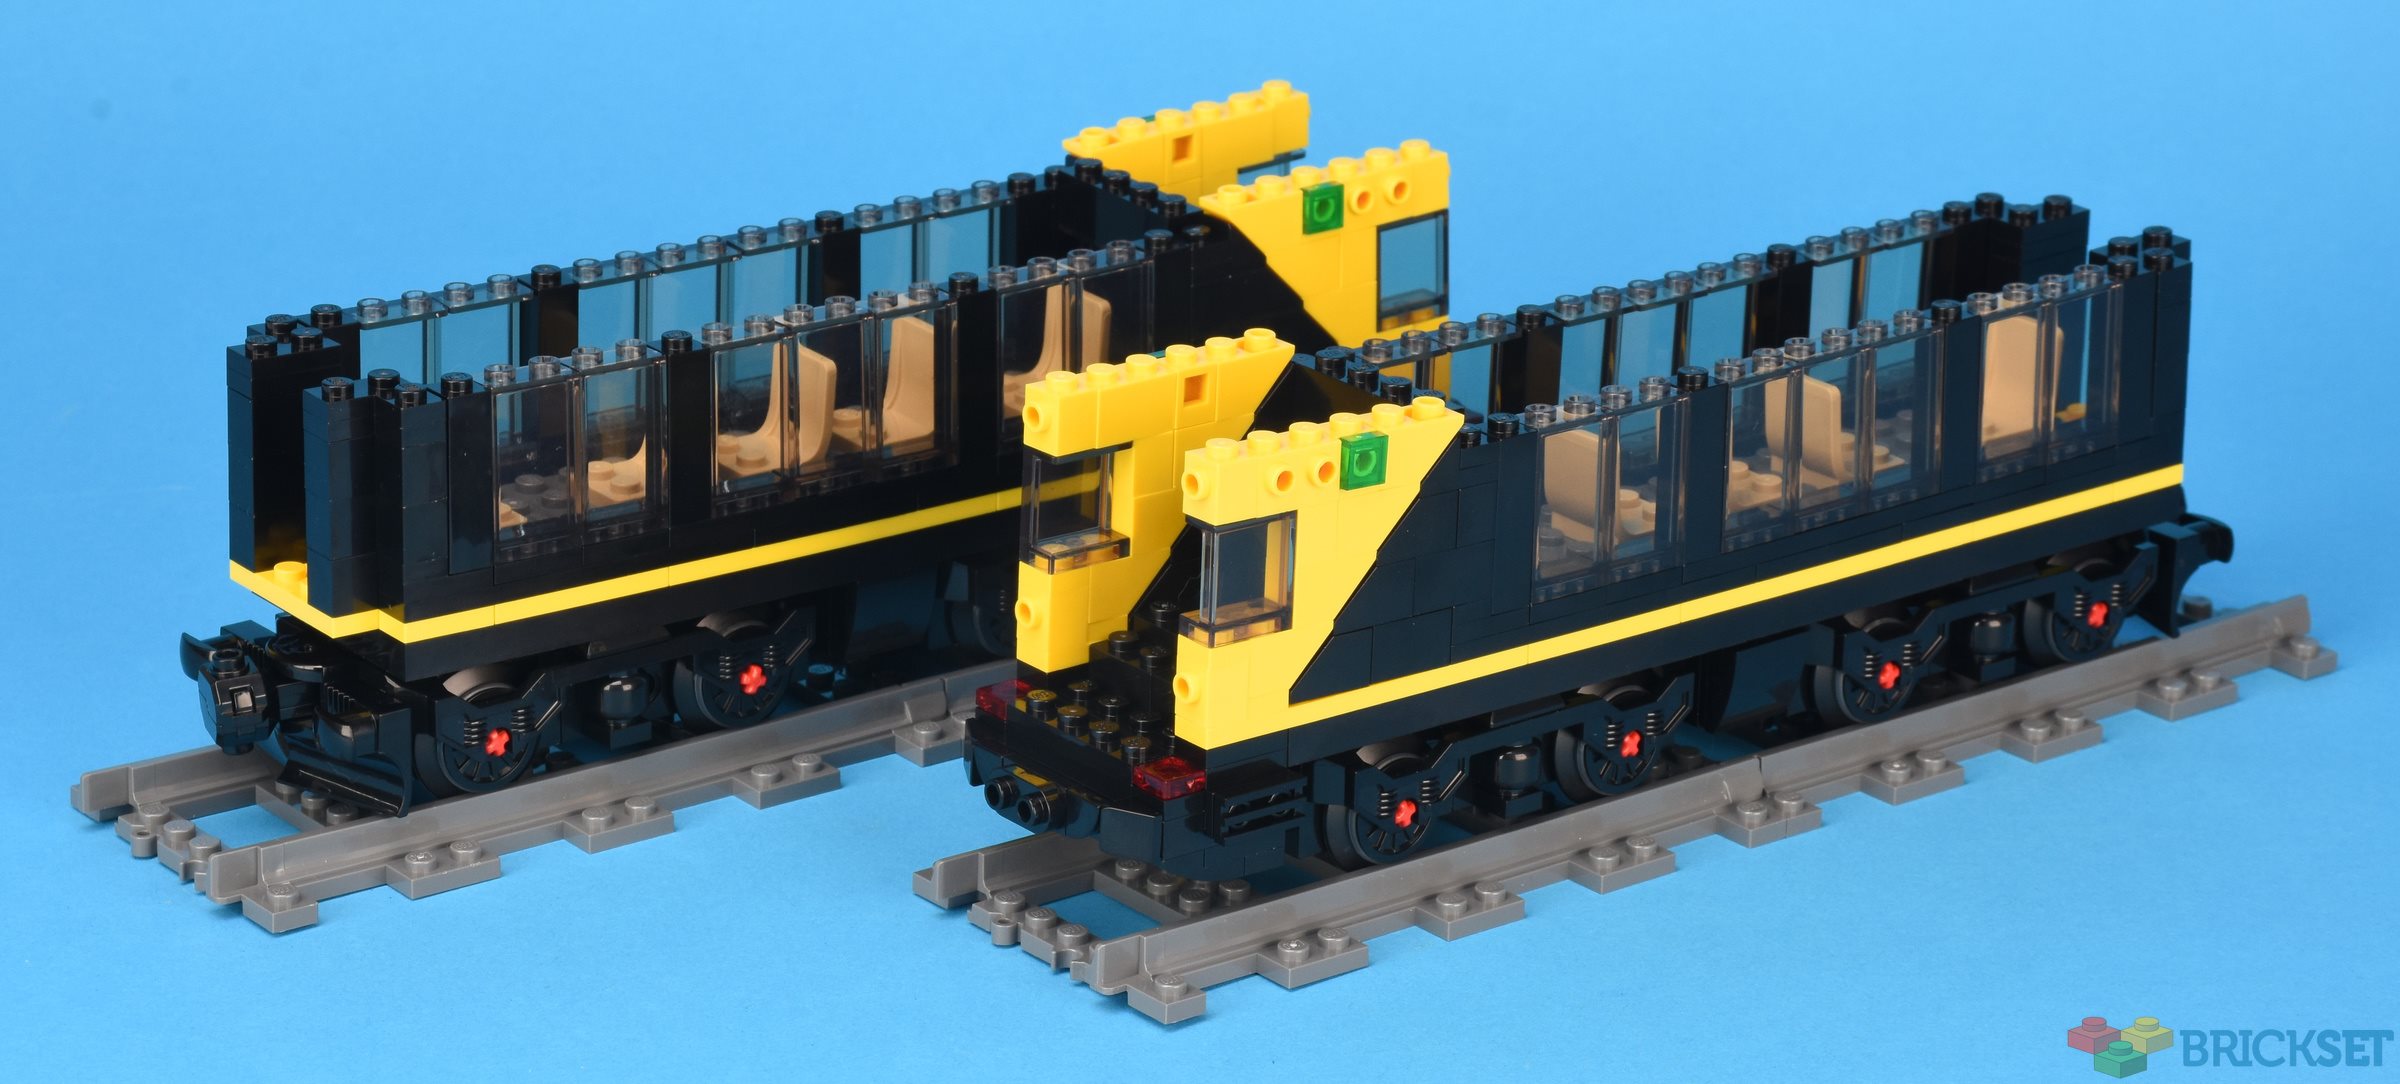 Set Review - #910002-1: Studgate Train Station - Bricklink Designer Program  — Bricks for Bricks